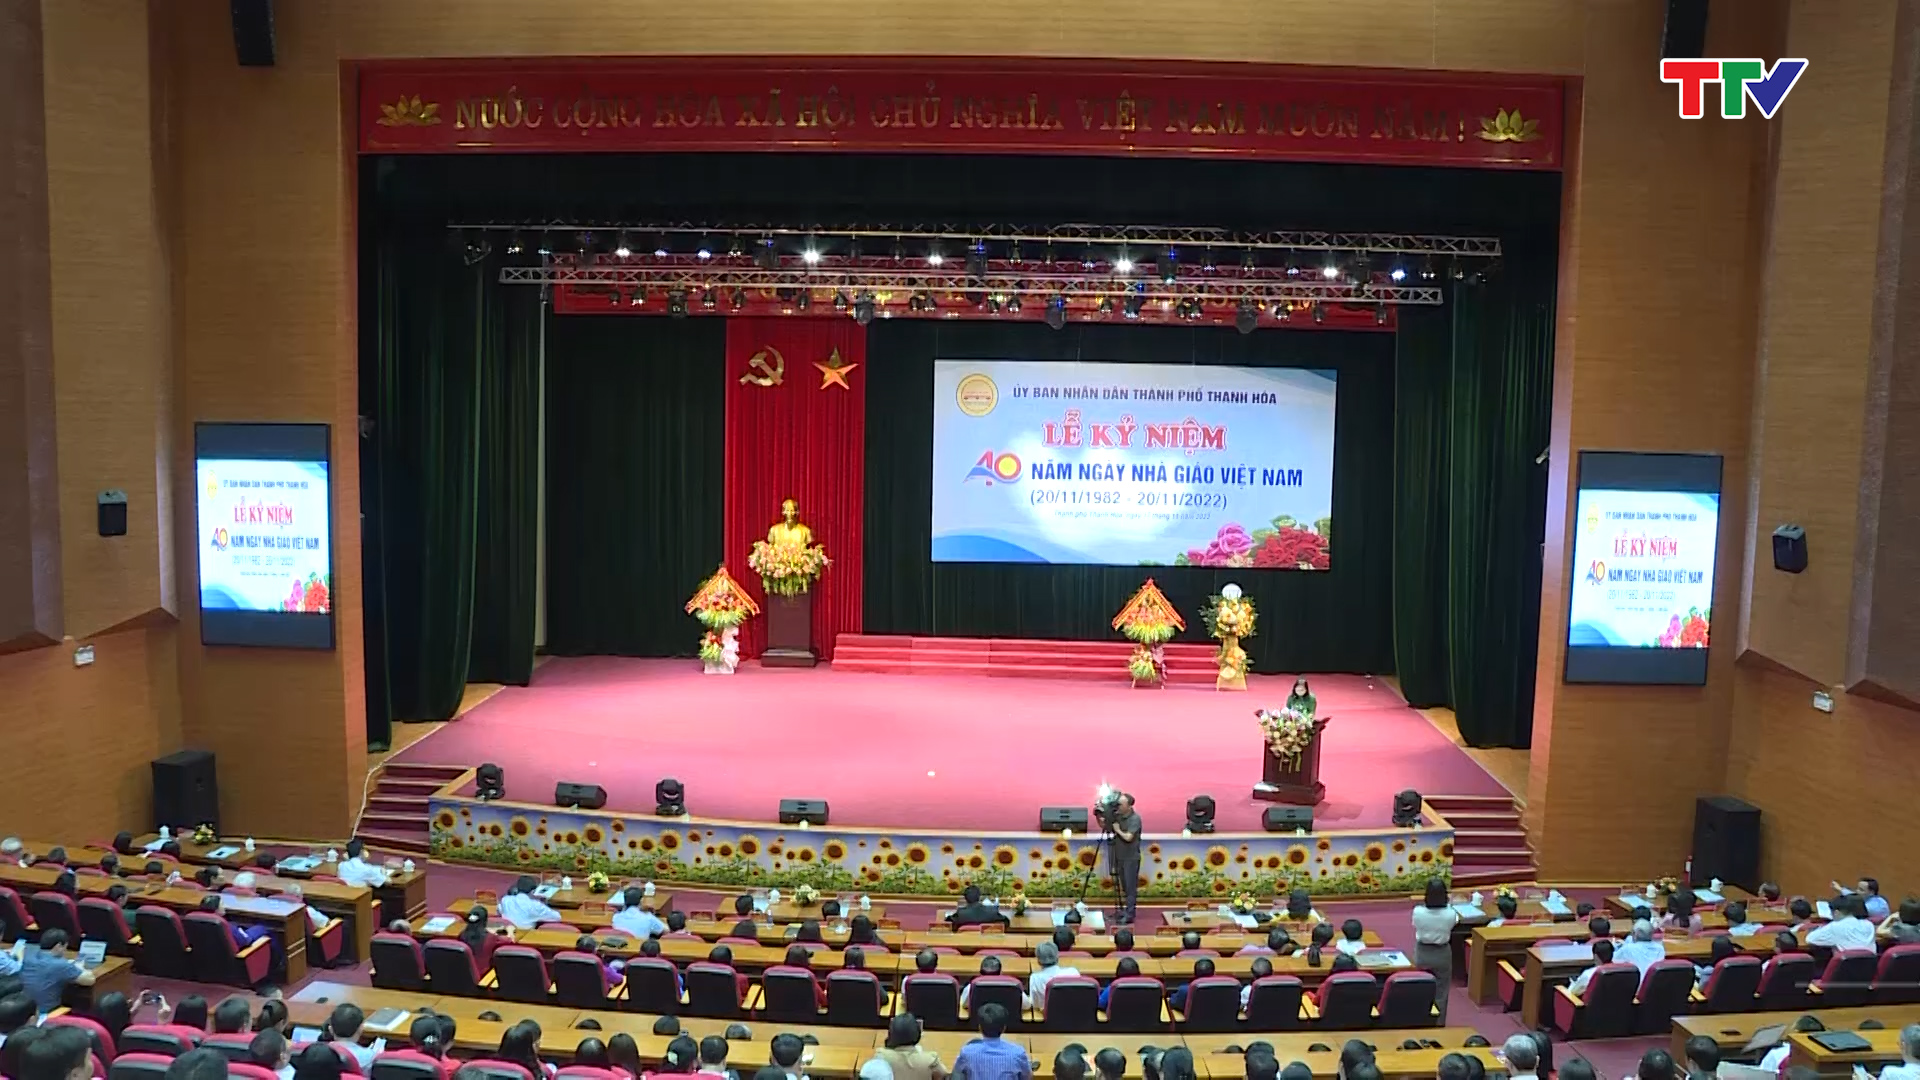 Thành phố Thanh Hóa kỷ niệm 40 năm ngày nhà giáo Việt Nam - Ảnh 2.